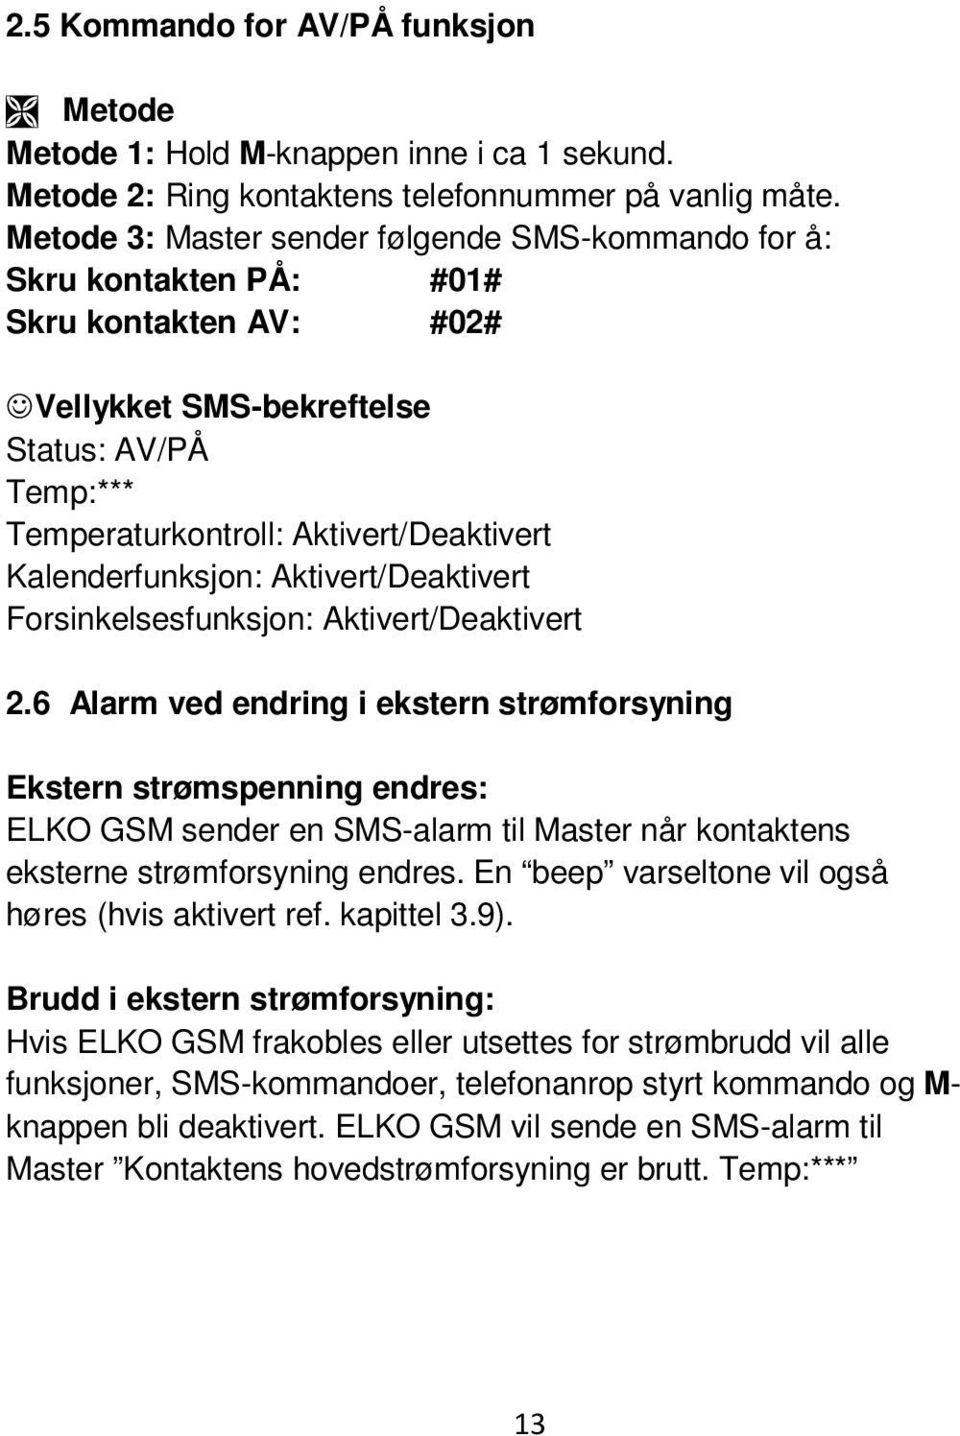 Aktivert/Deaktivert 2.6 Alarm ved endring i ekstern strømforsyning Ekstern strømspenning endres: ELKO GSM sender en SMS-alarm til Master når kontaktens eksterne strømforsyning endres.